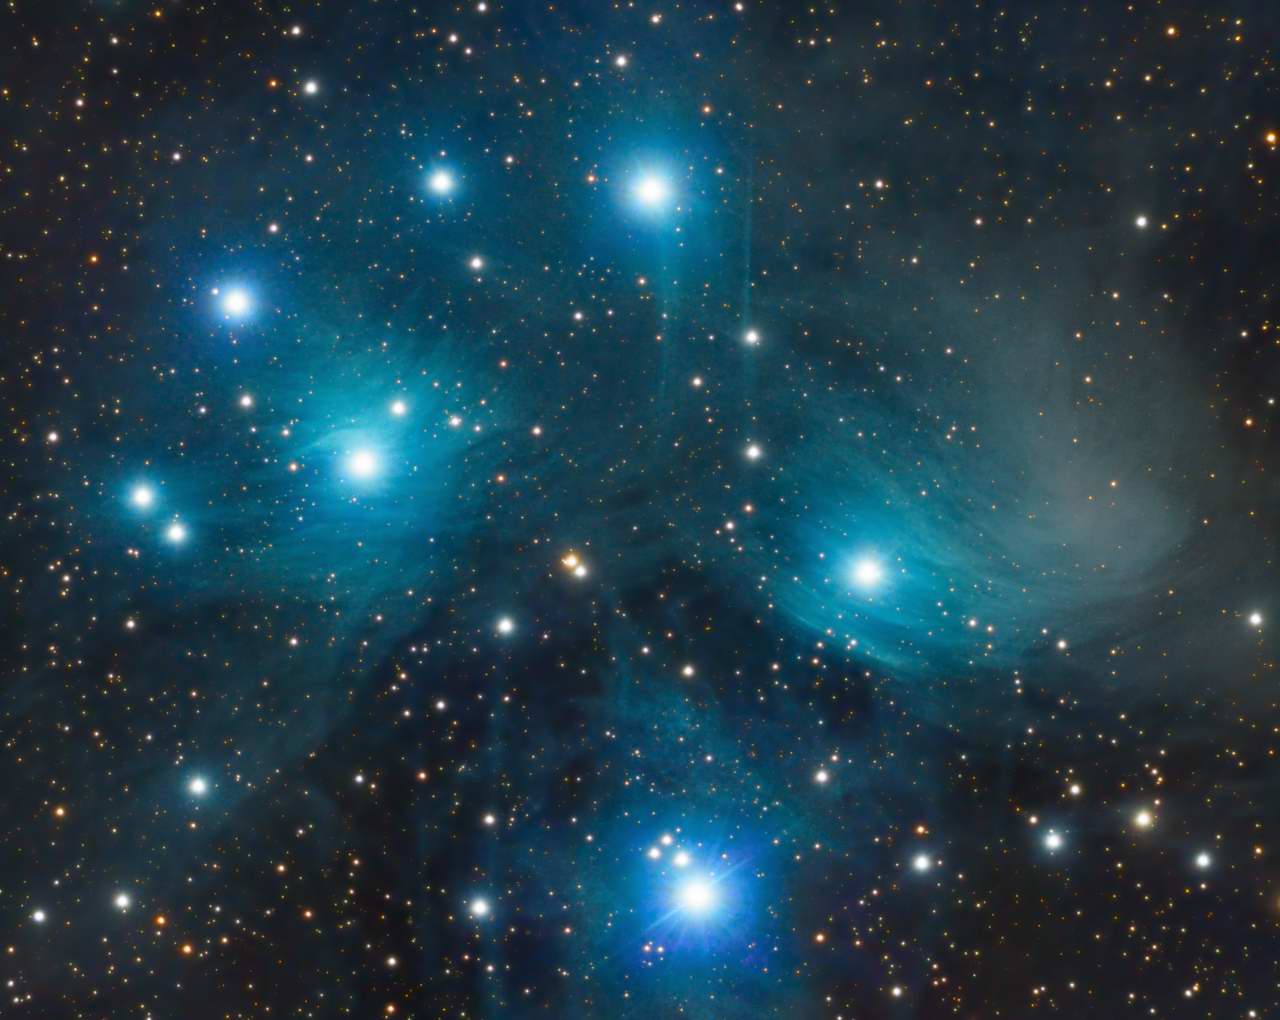 M45 - The Pleiades by Jeff Kraehnke 